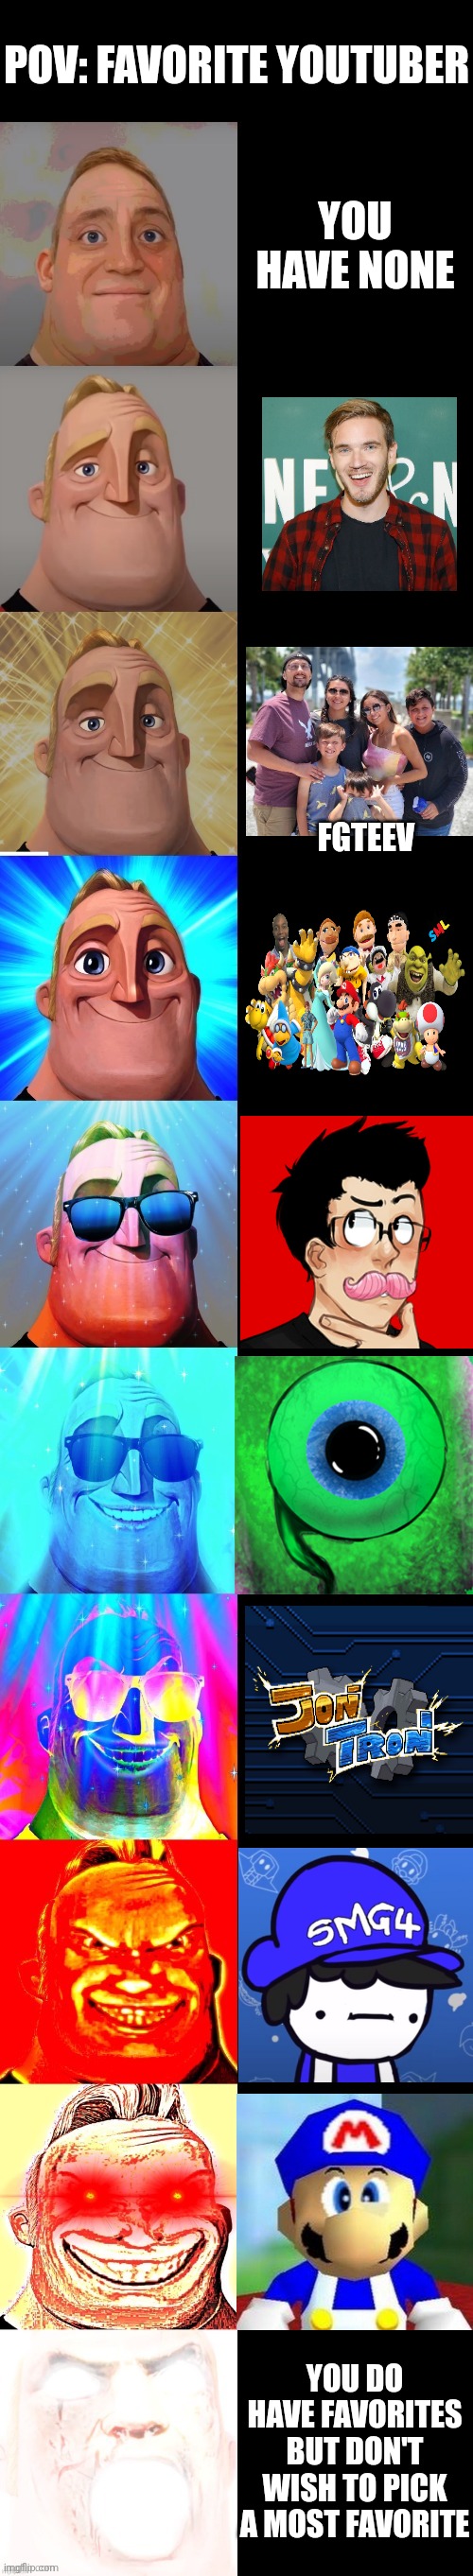 Mr Incredibles Memes - Imgflip